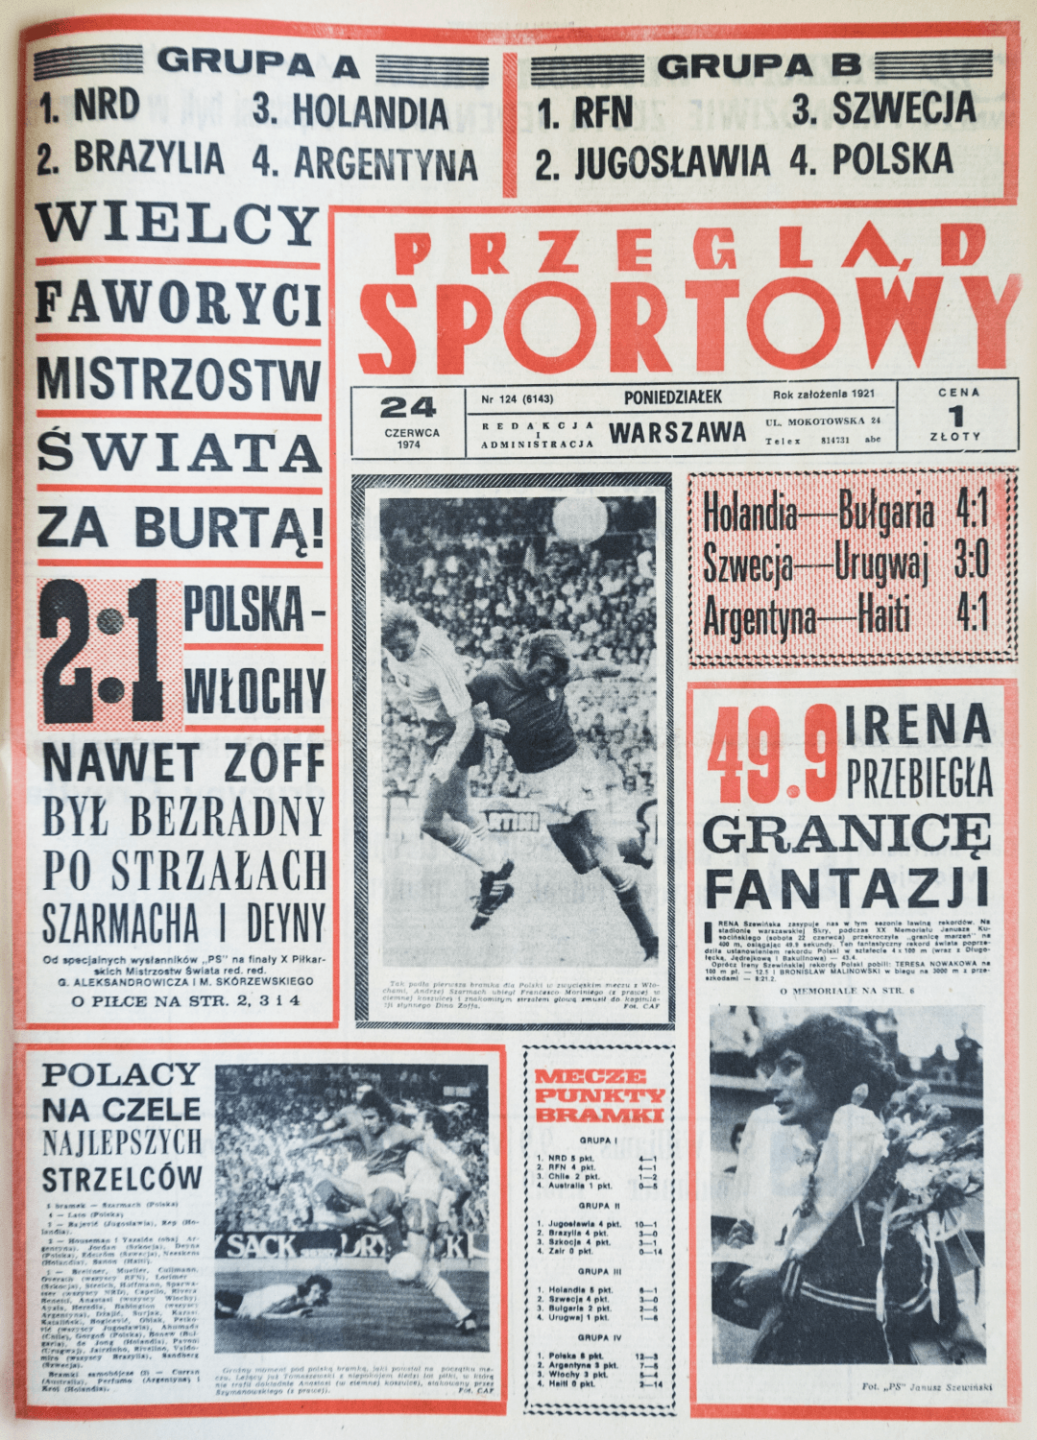 Pierwsza strona Przeglądu sportowego po meczu Polska - Włochy 2:1 z mistrzostw świata 1974.